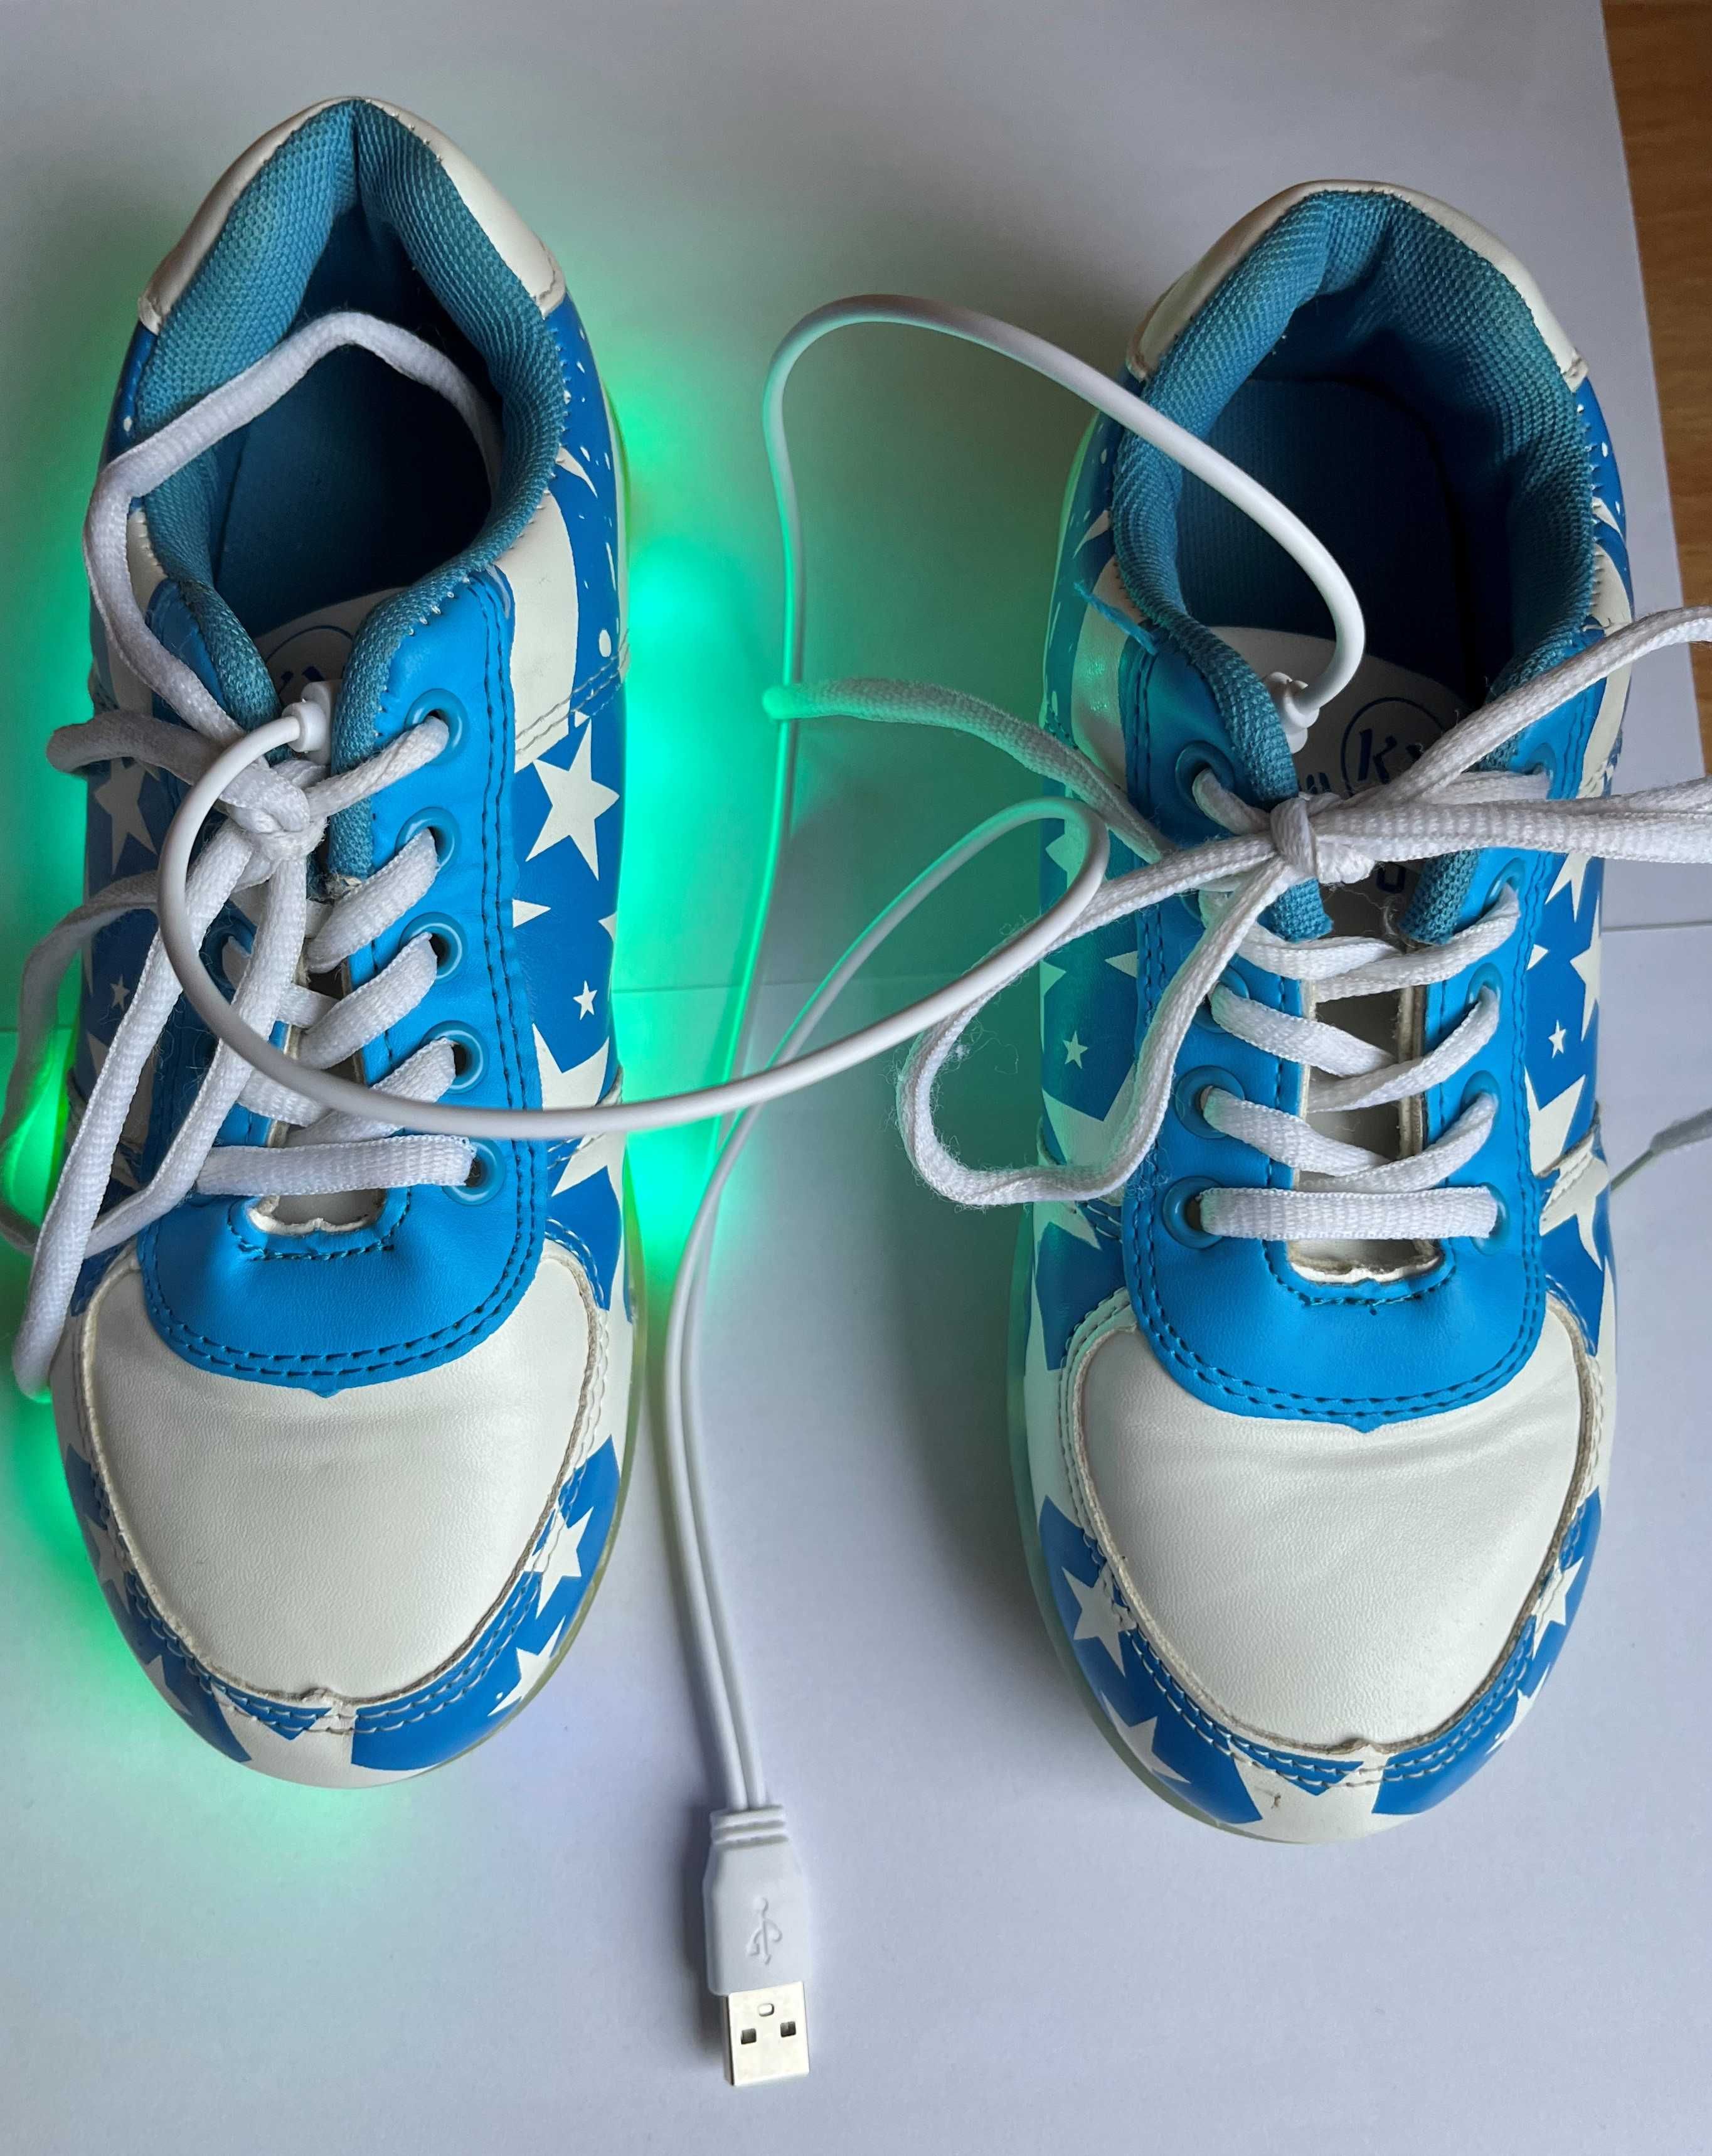 Buty LED niebieskie, podświetlane ,świecące w ciemności